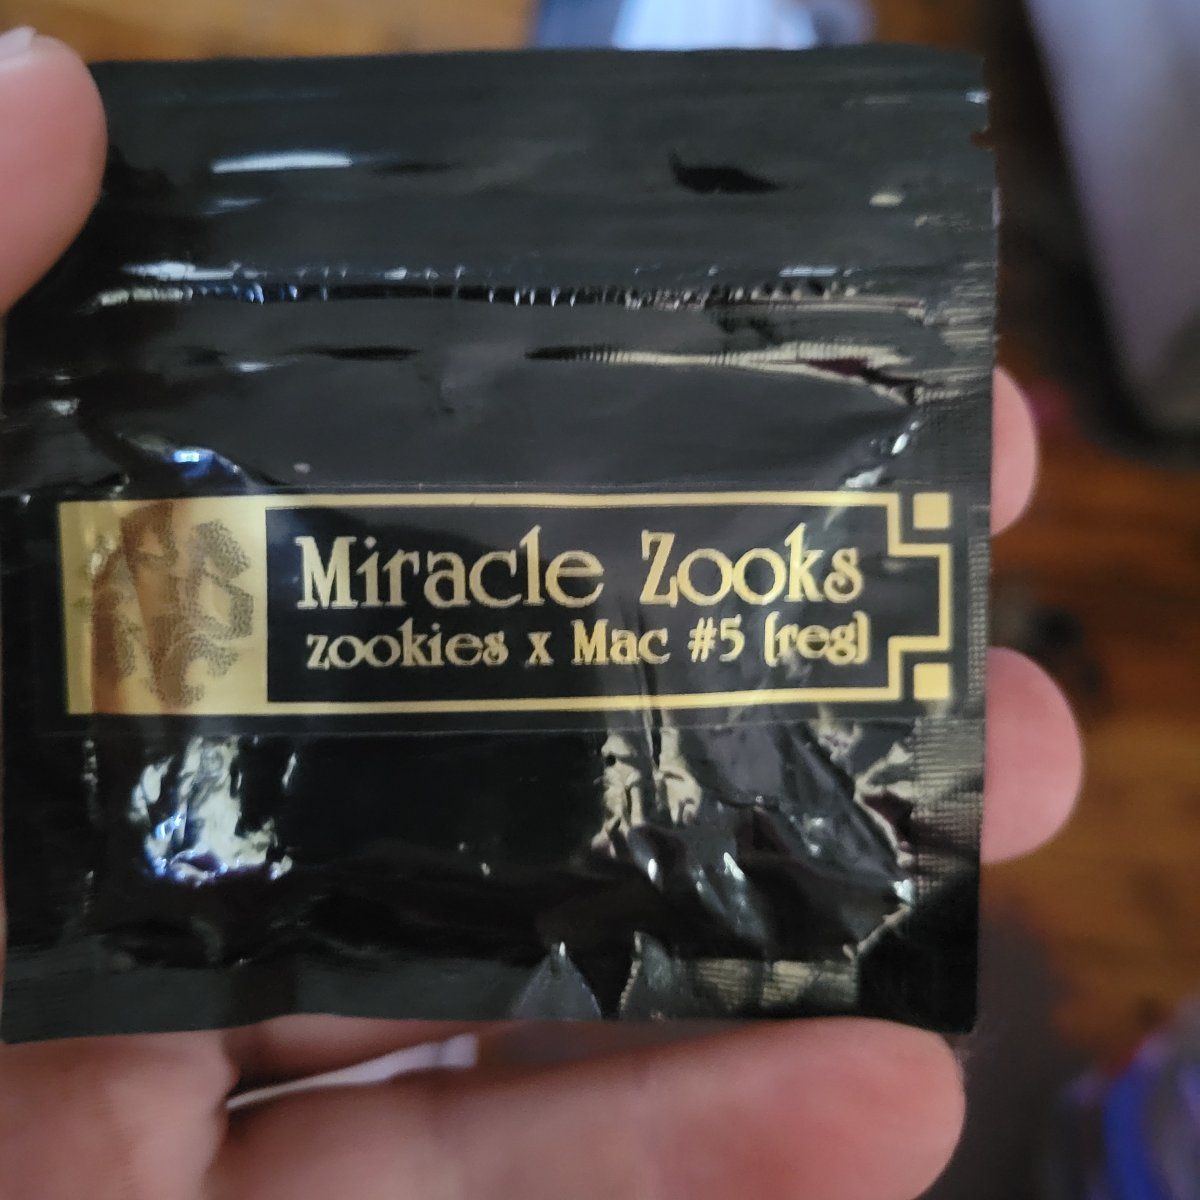 Miracle zooks rocbud zookies x mac5 regs for sale